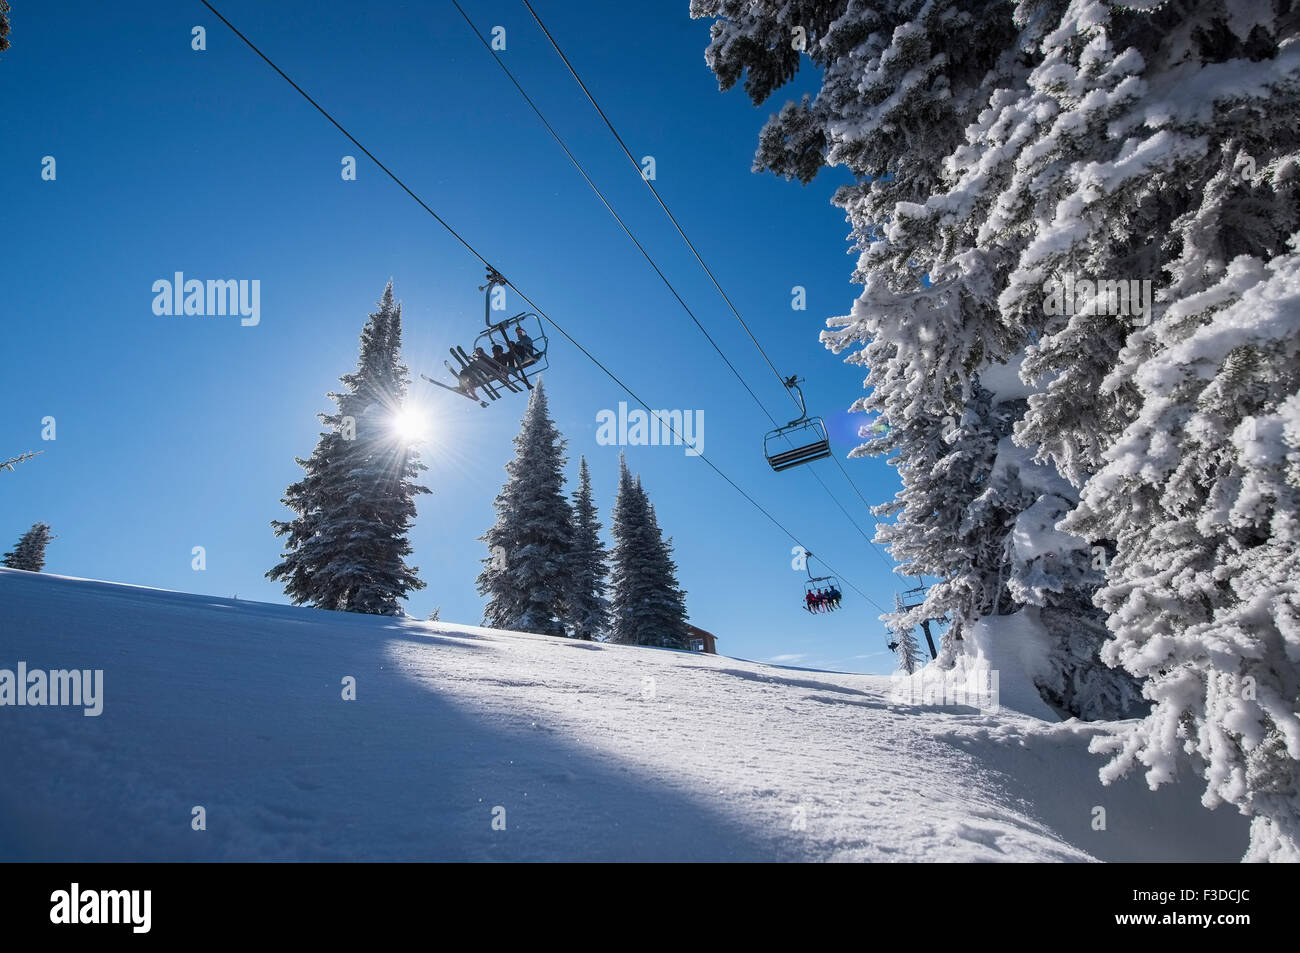 Ski lift over ski slope Stock Photo